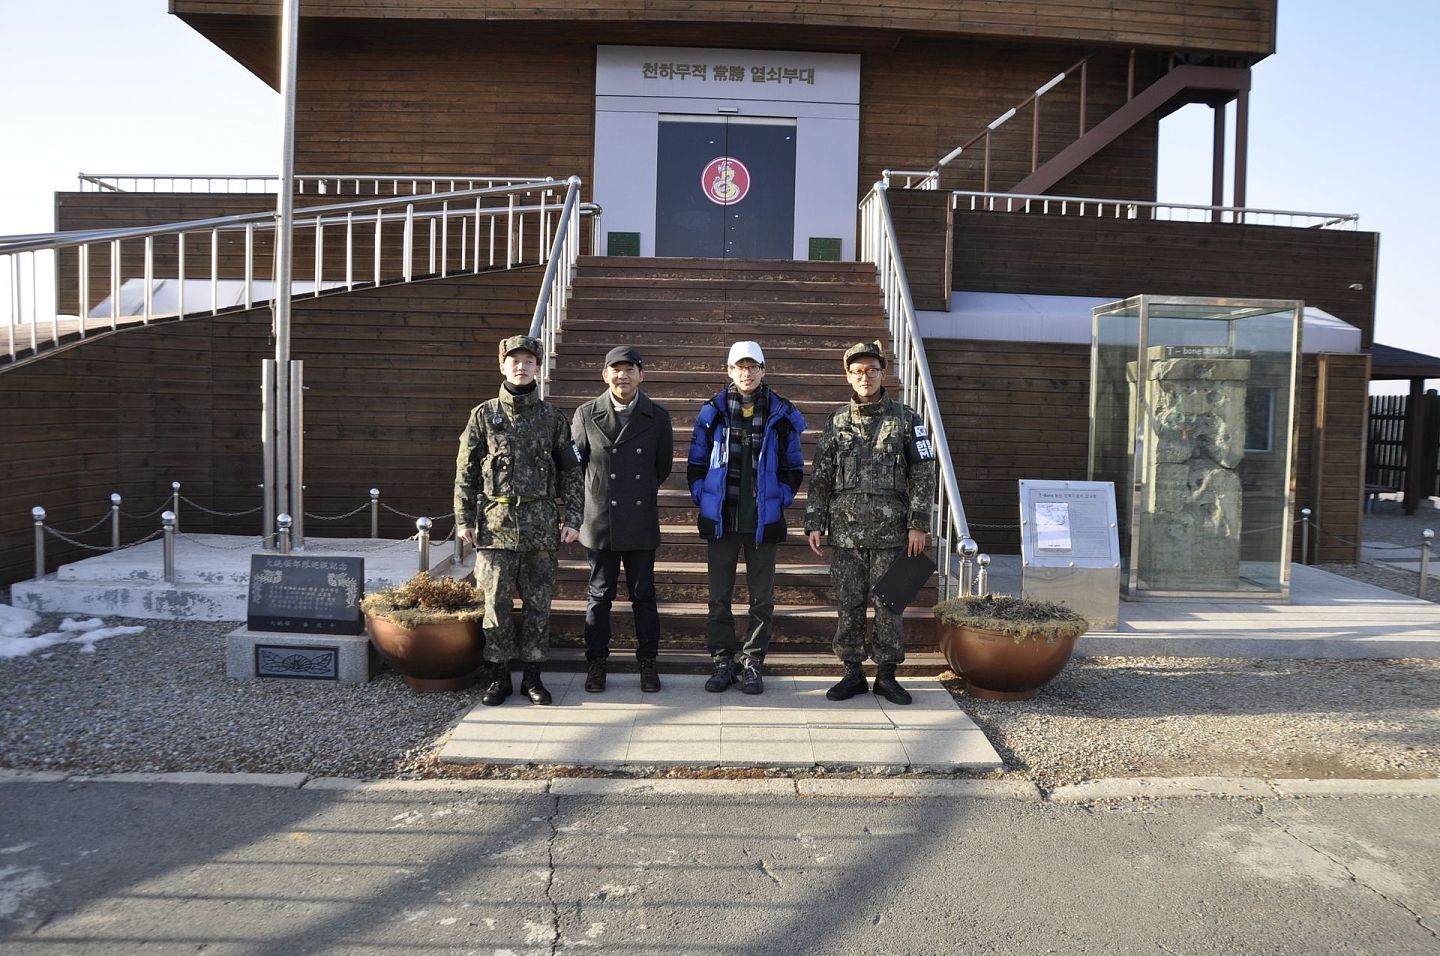 本文作者(左二)与同行的韩国大学生(左三)和韩国士兵在京畿道涟川郡钥匙展望台前合影。（李枏供图）